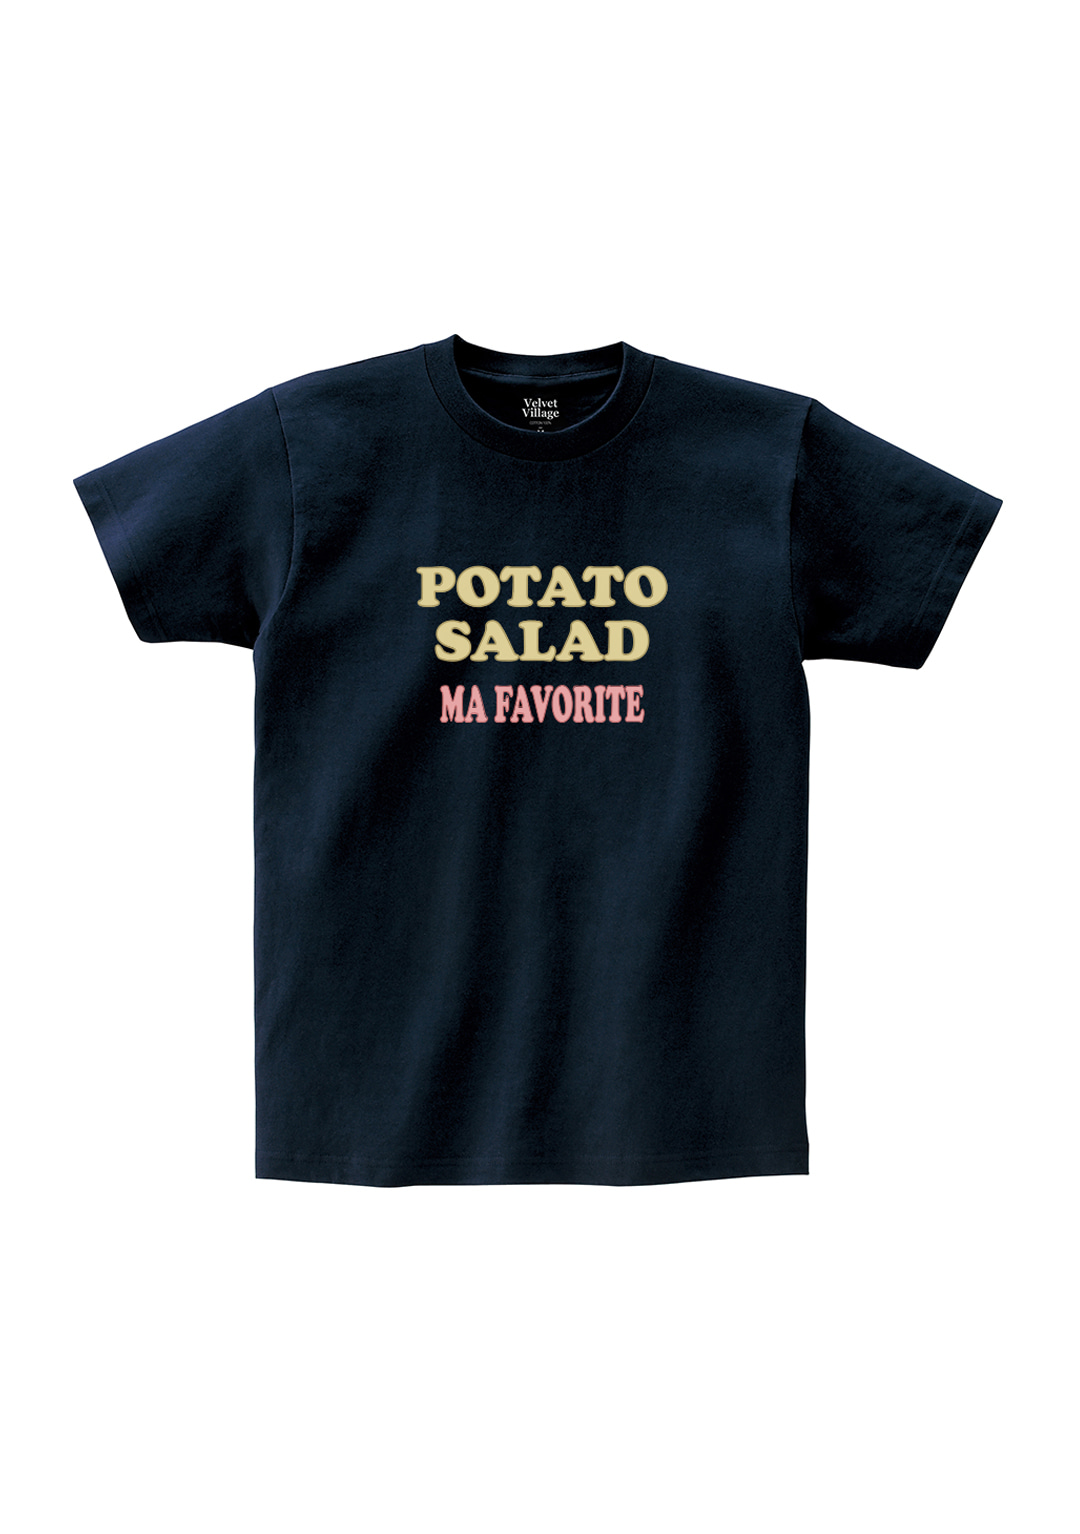 Potatosalad T-shirt (Navy)